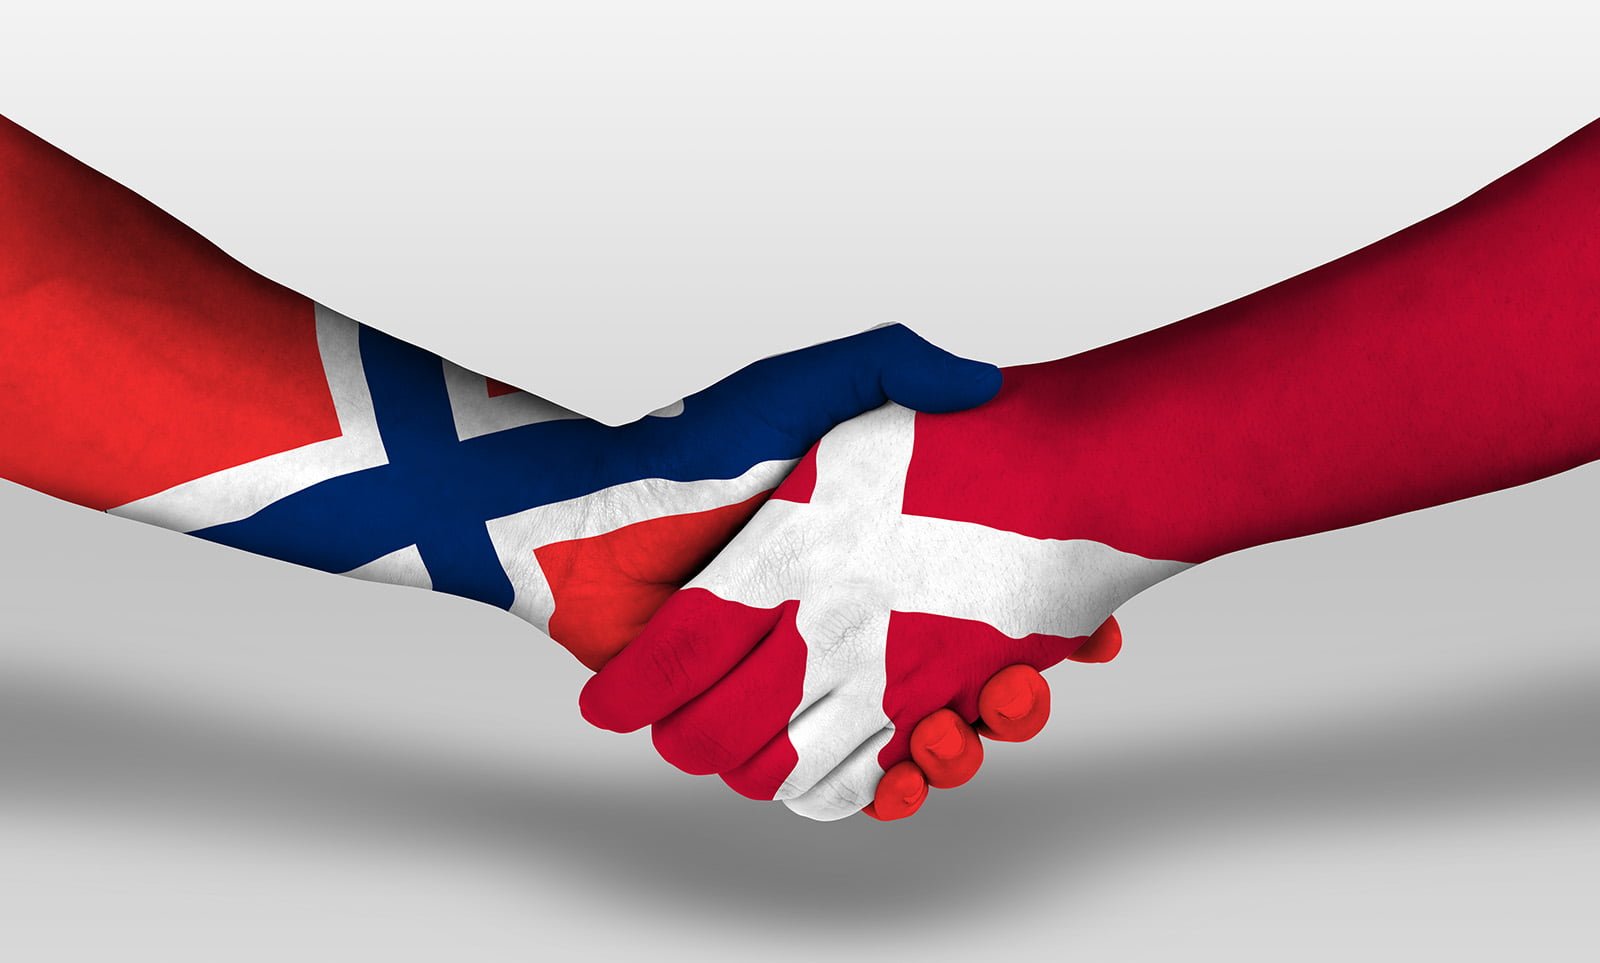 Norway and Denmark handshake